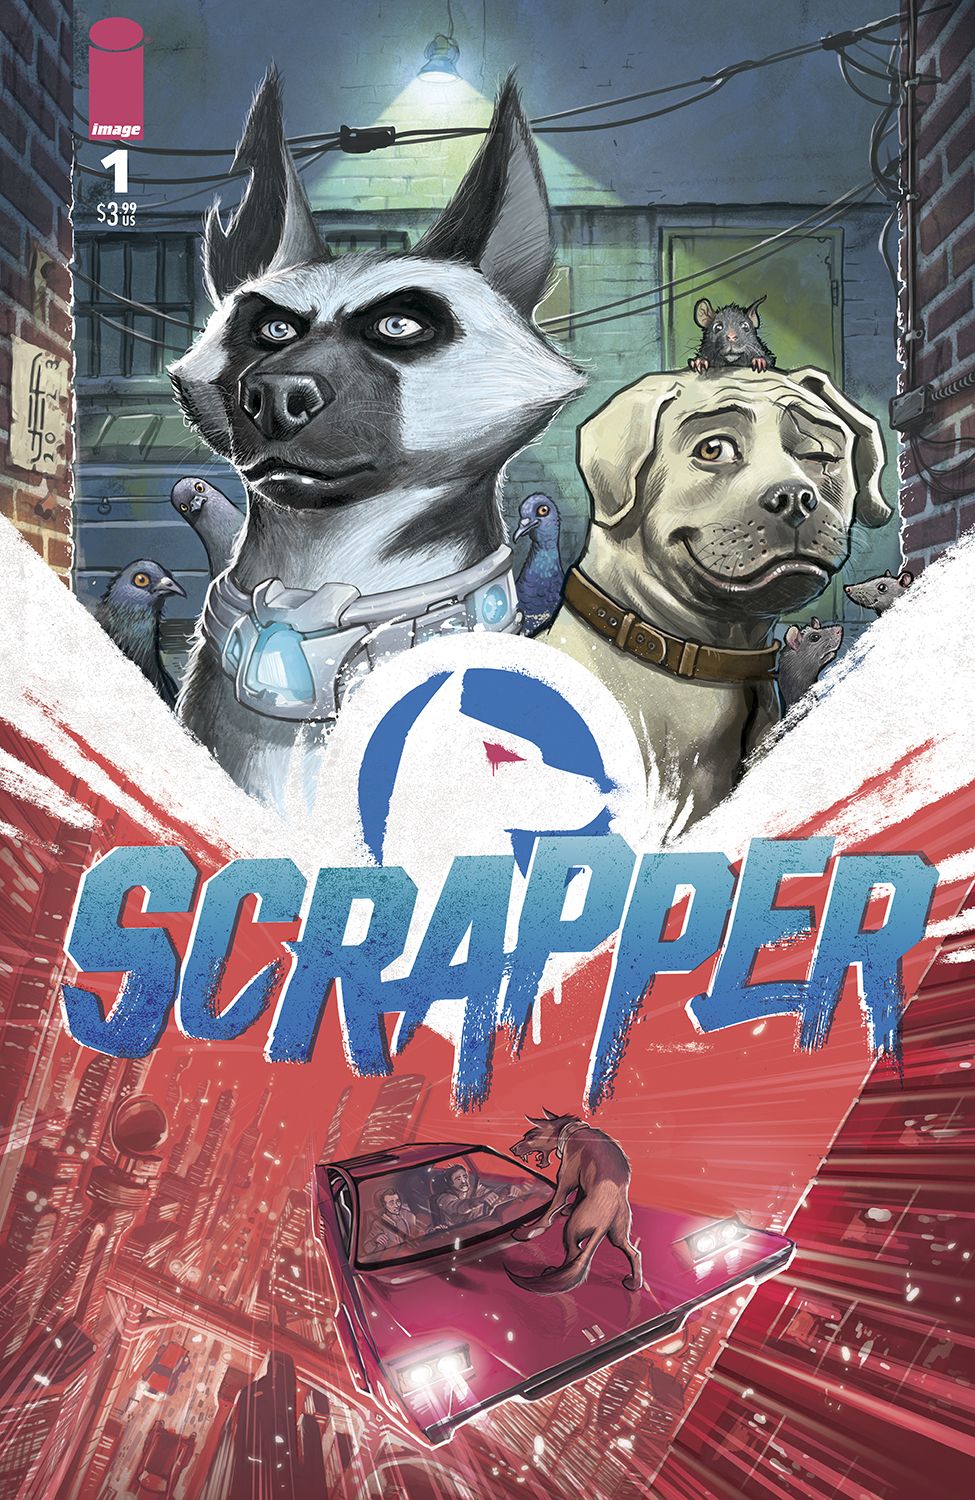 scrapper #1 image comics cover